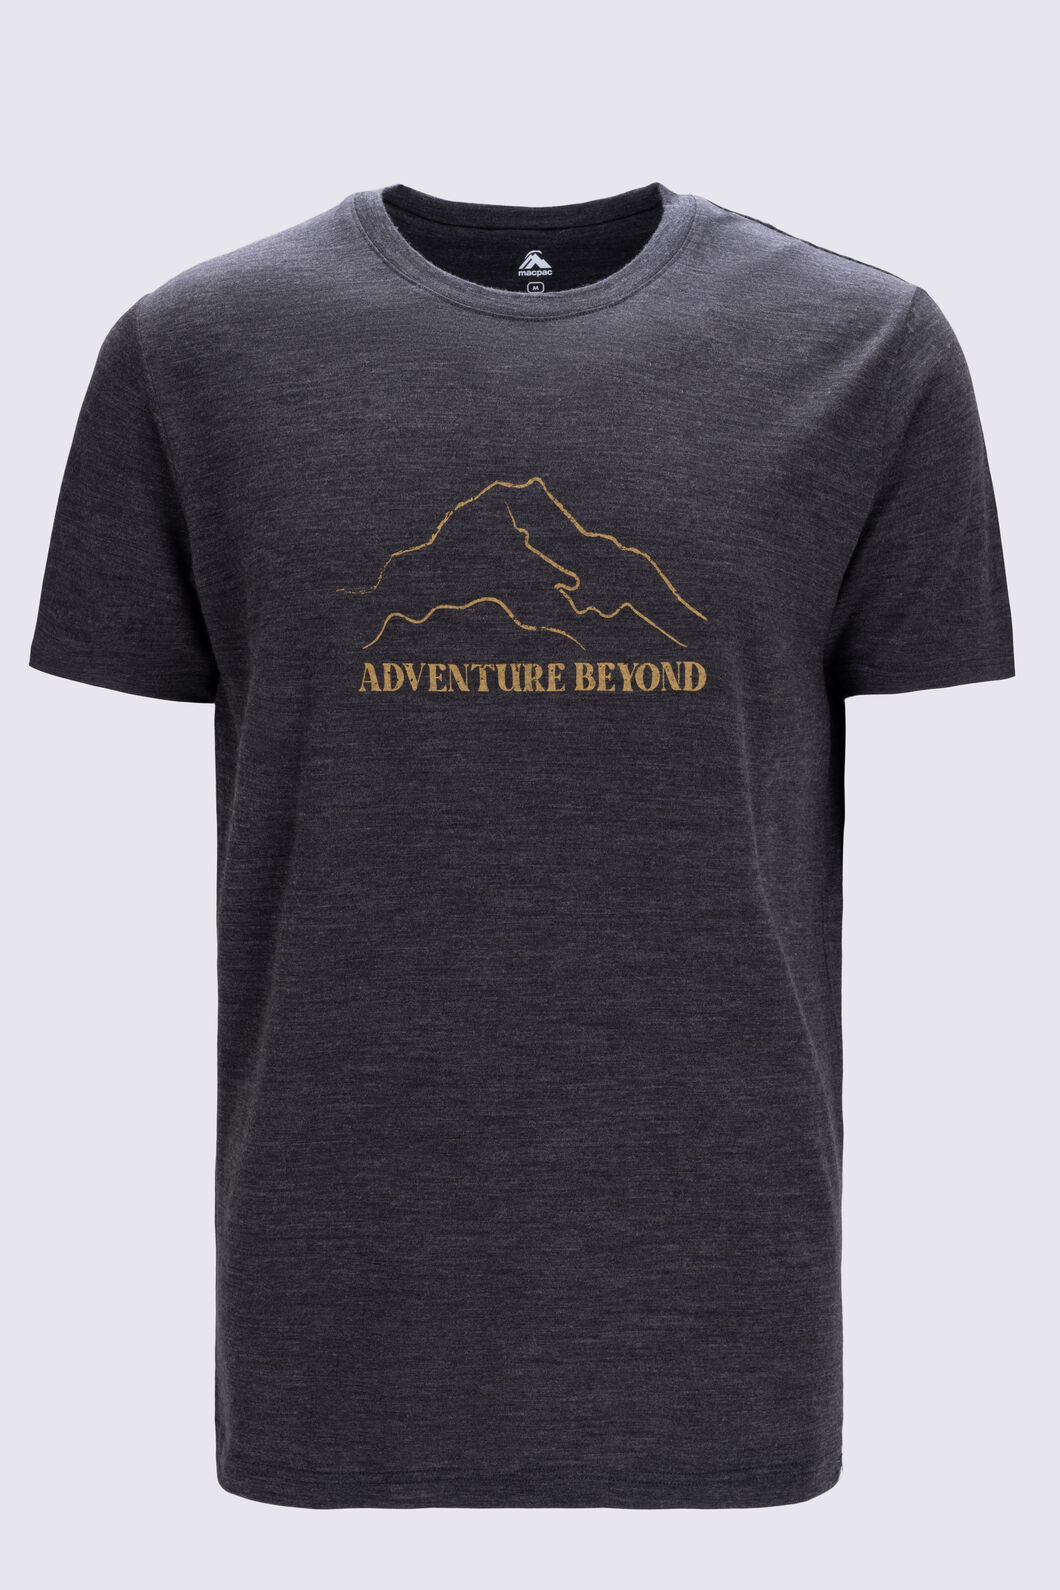 Macpac Men's Adventure Beyond 180 Merino T-Shirt | Macpac